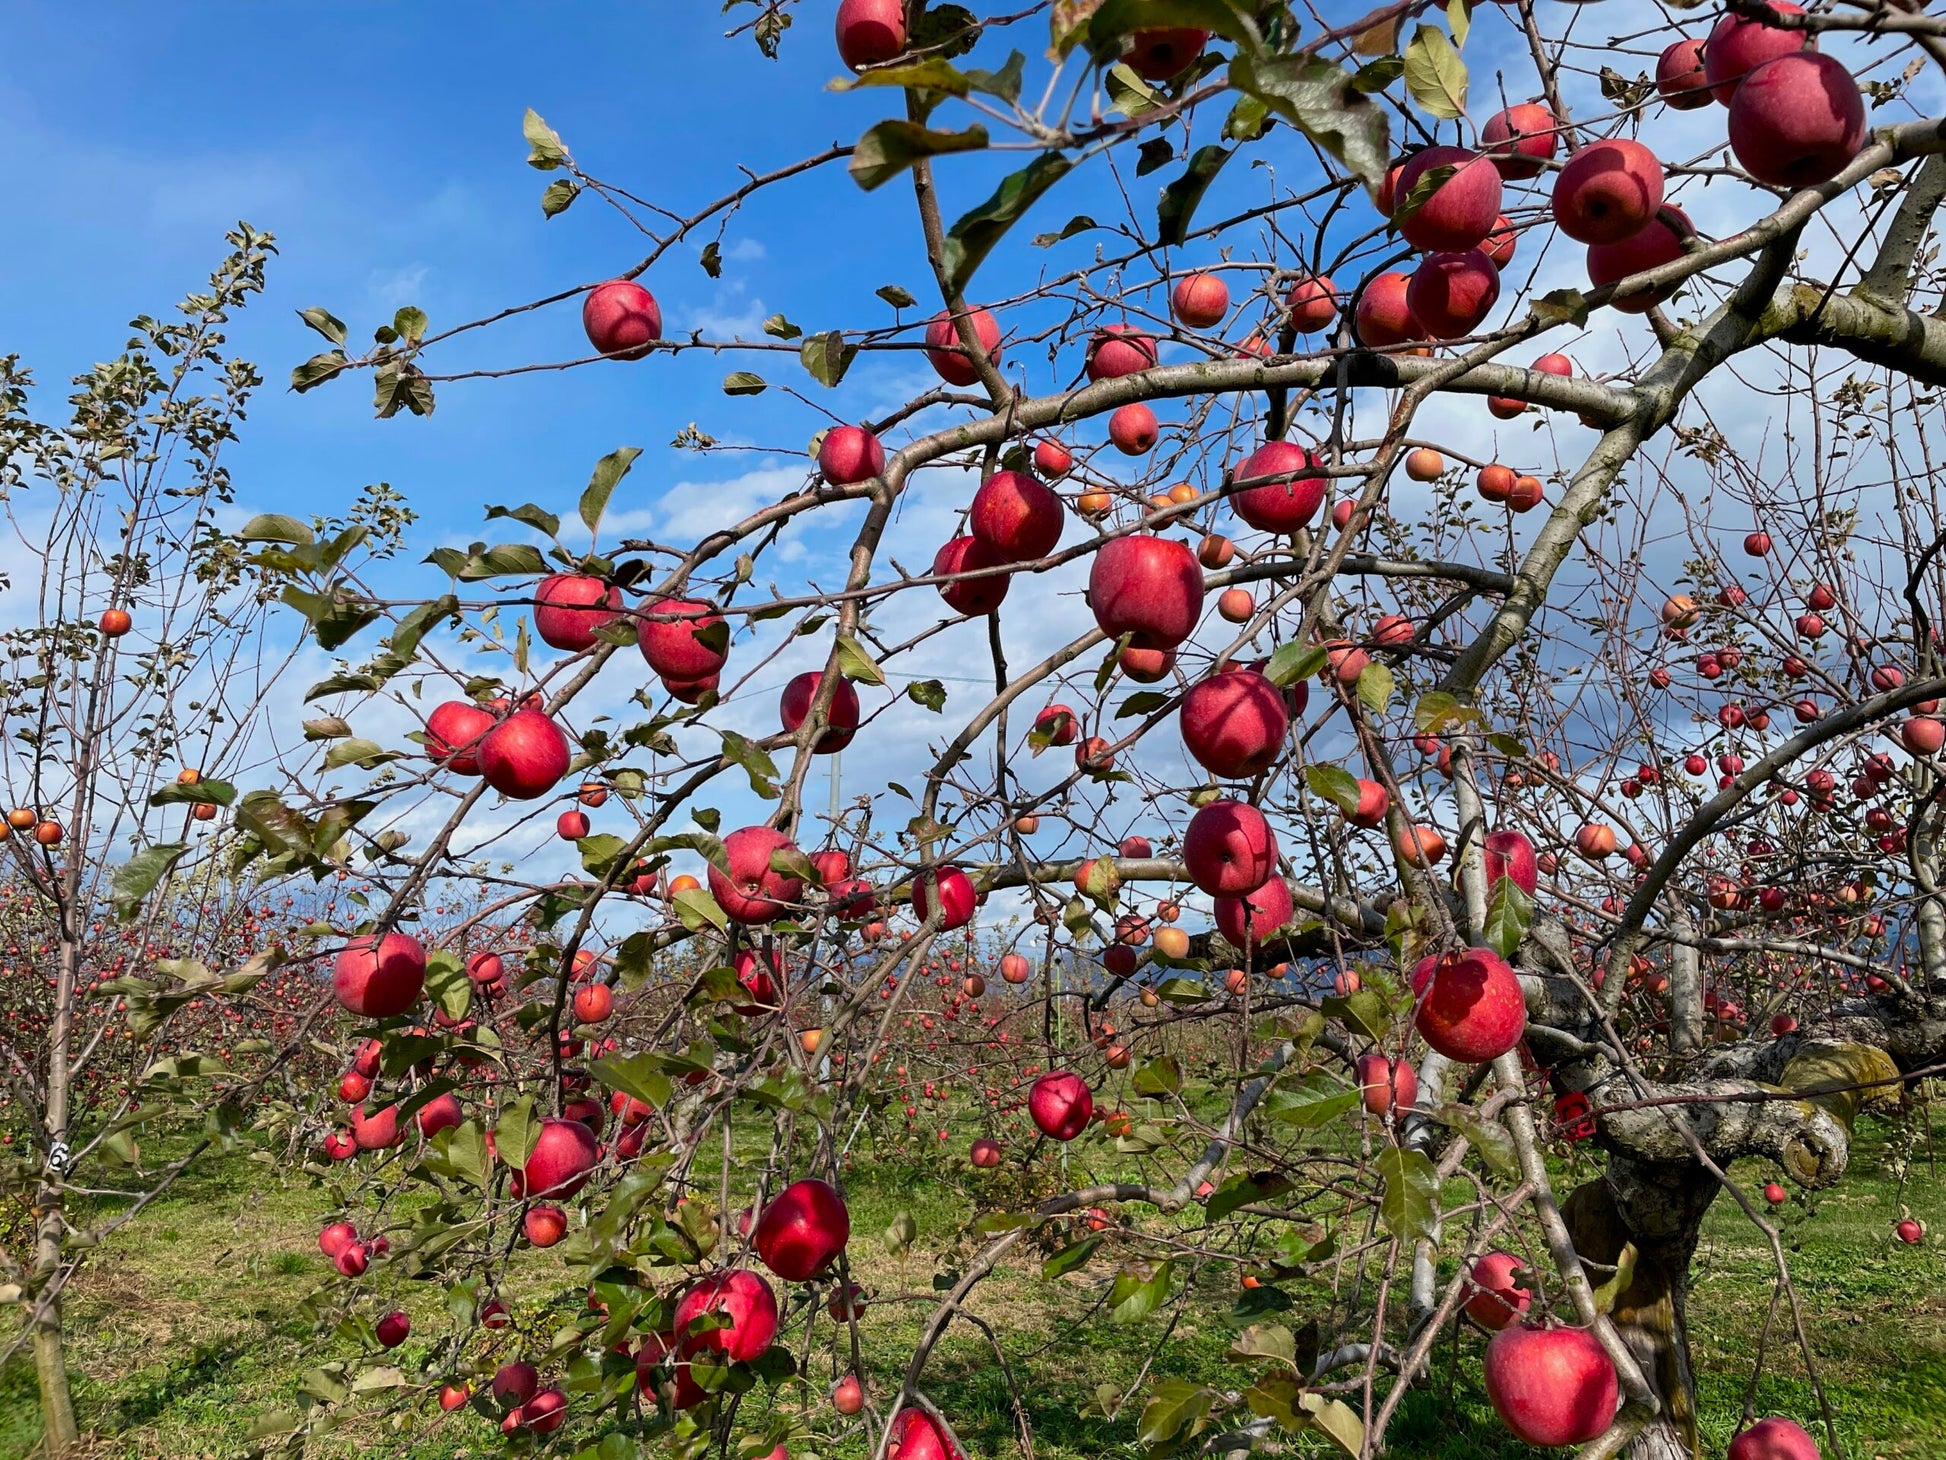 おぐらやま農場さんが肥料・農薬に頼らず育てた、安曇野産の甘いリンゴを使った栄養たっぷりのドライ青果。 ドライフルーツ・乾燥野菜 BLUE BLUEBERRY FARM   